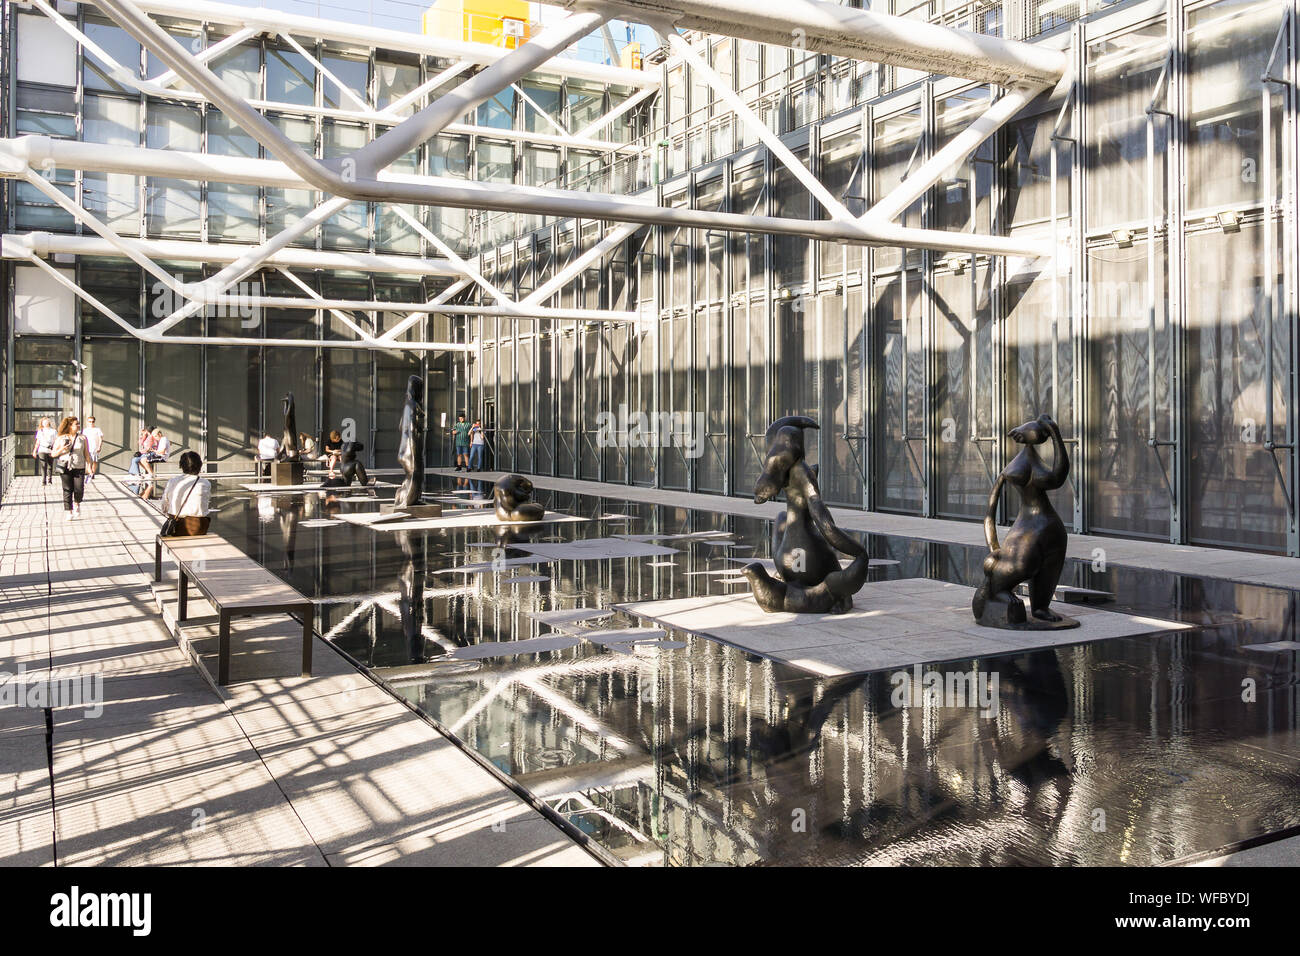 Centre Pompidou Paris - une terrasse extérieure avec jardin de sculptures au Centre Pompidou à Paris, France, Europe. Banque D'Images